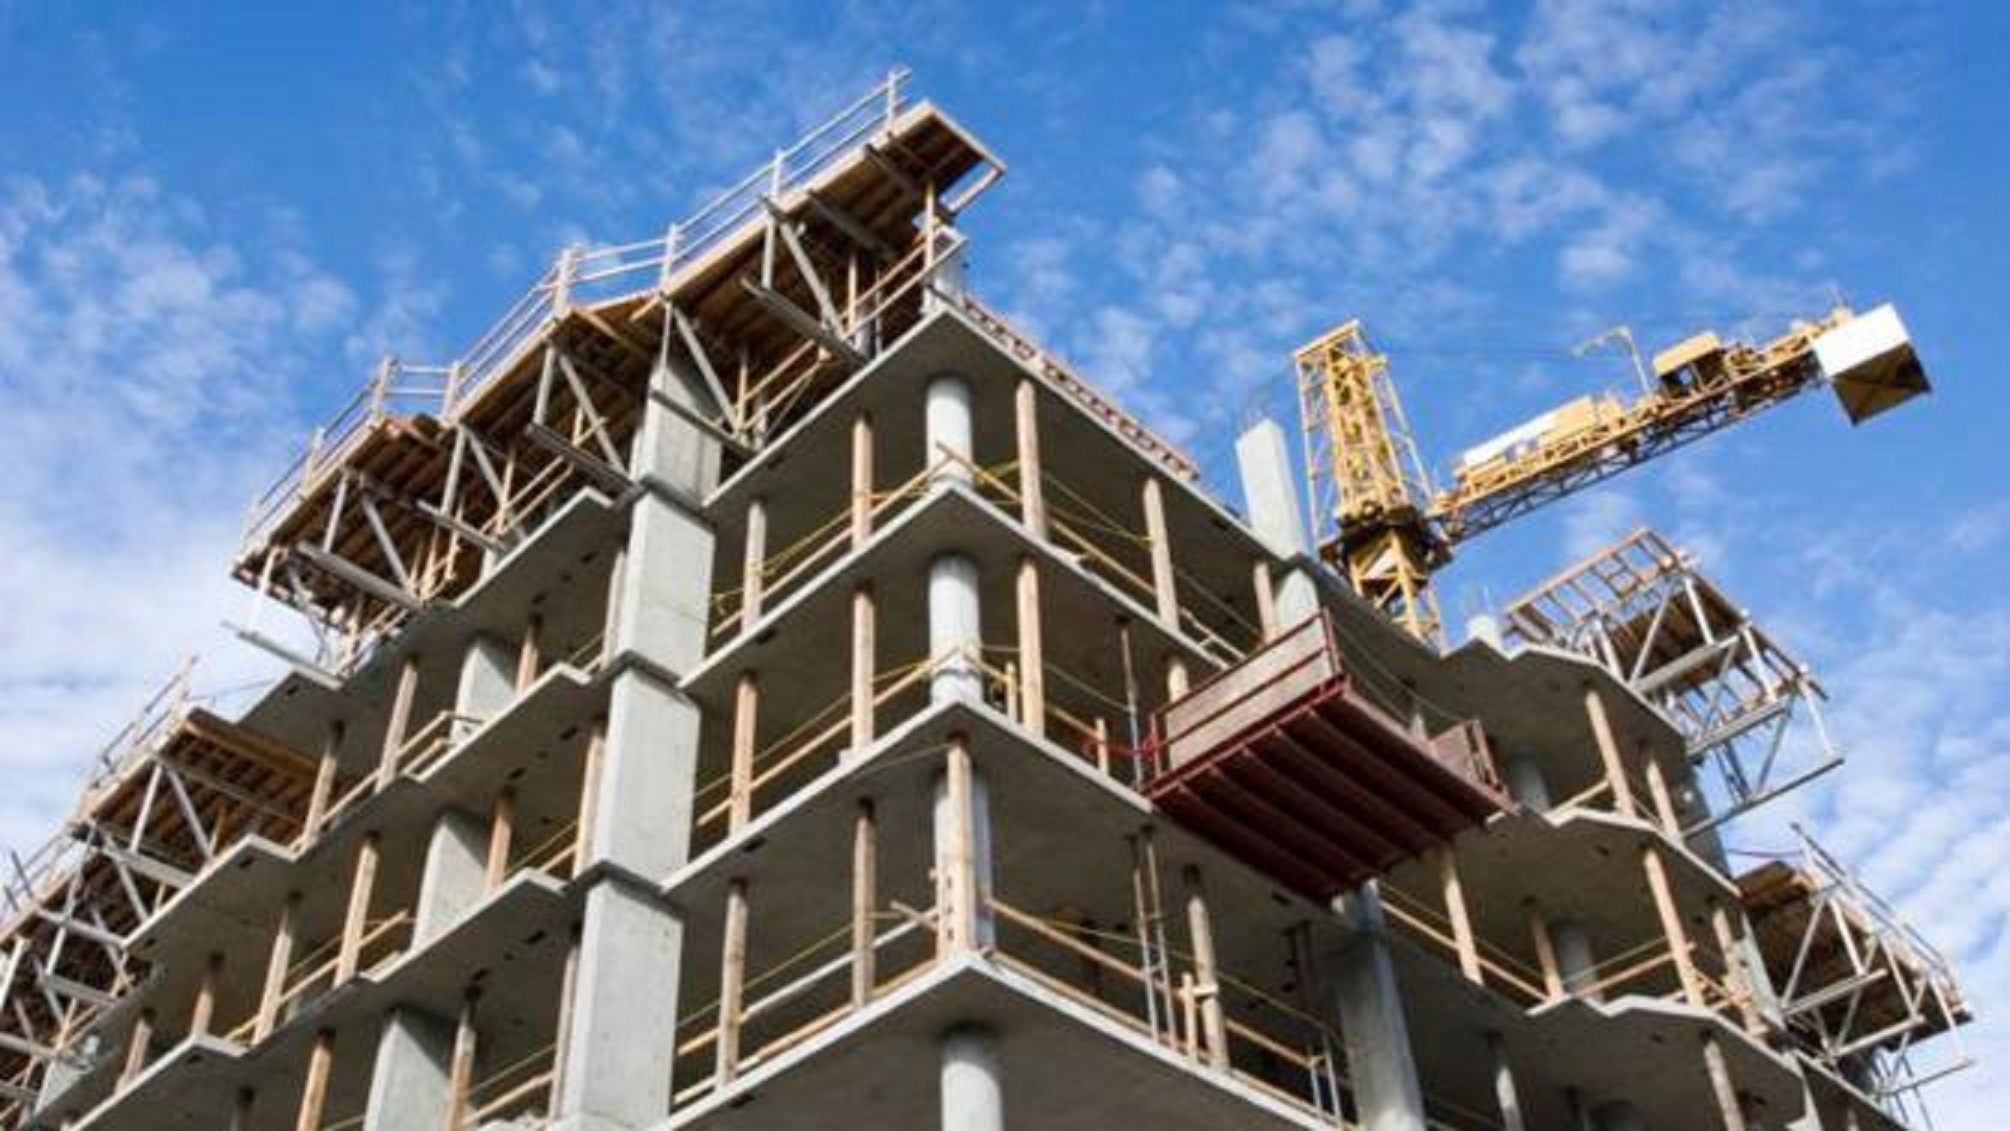 Logements neufs à usage d’habitation : Augmentation de 4,4% du coût de construction au 2ème trimestre 2022